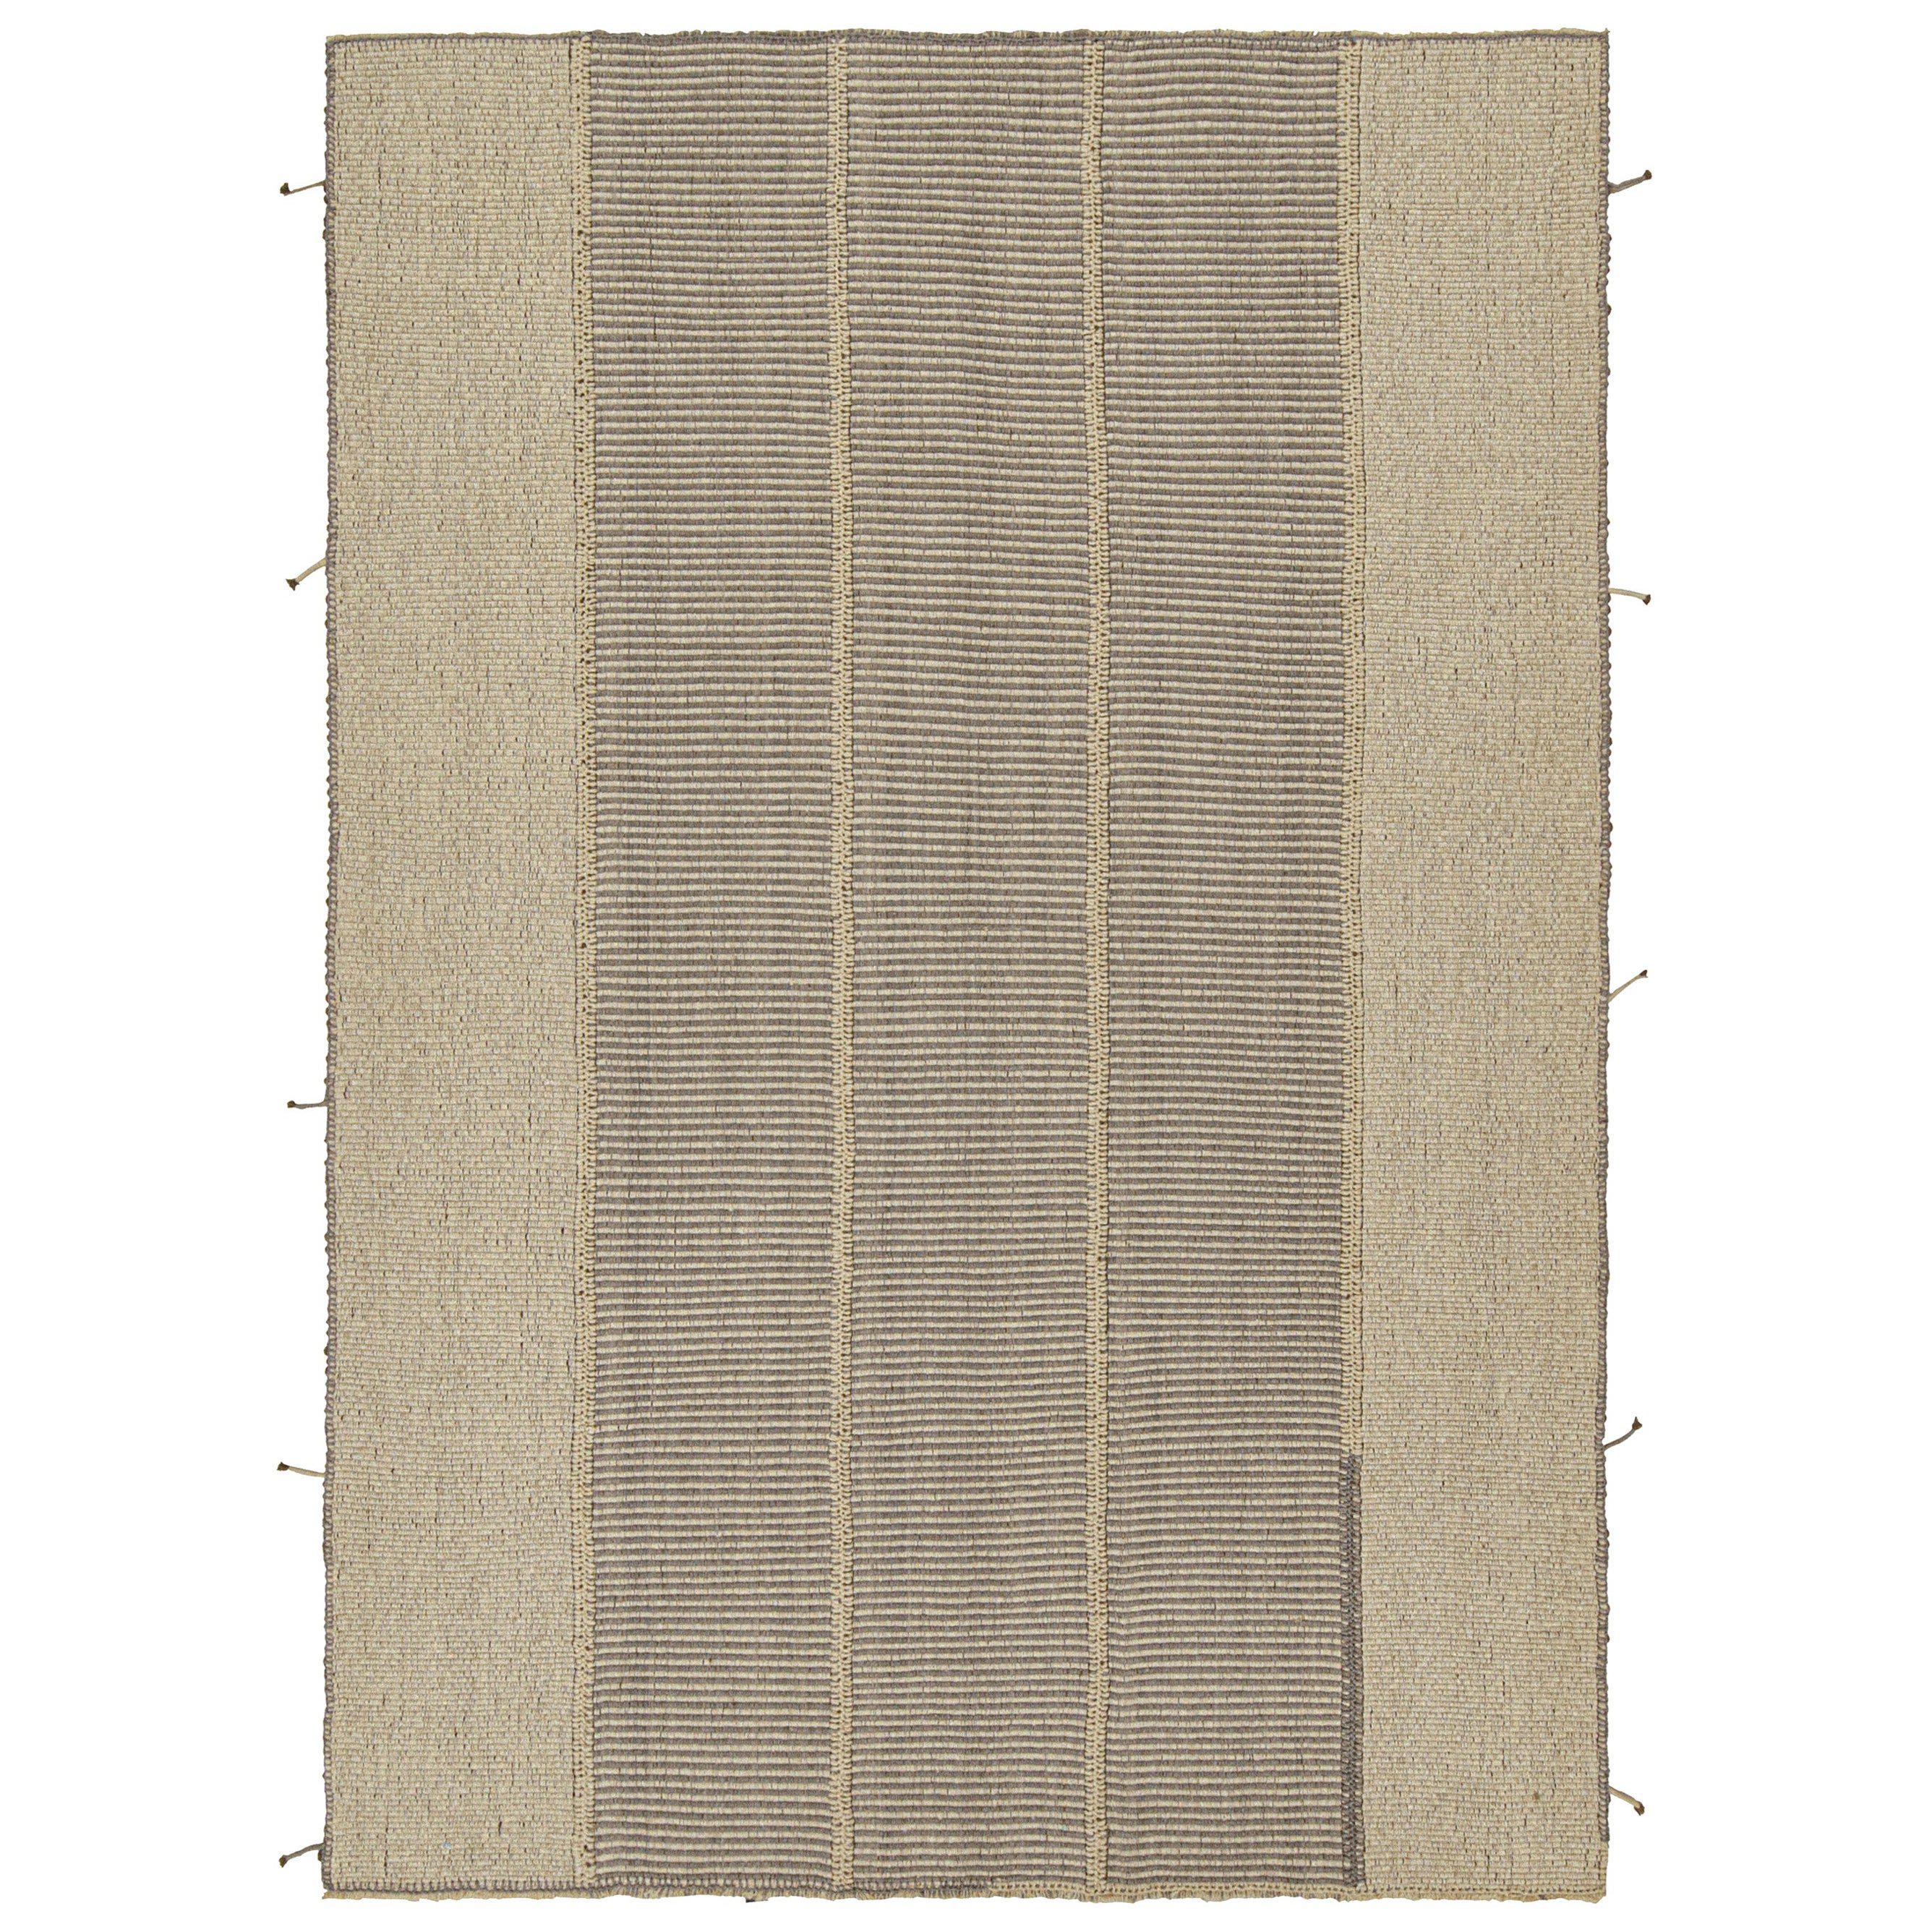 Design contemporain de kilim sur mesure de Rug & Kilim en beige-marron et gris